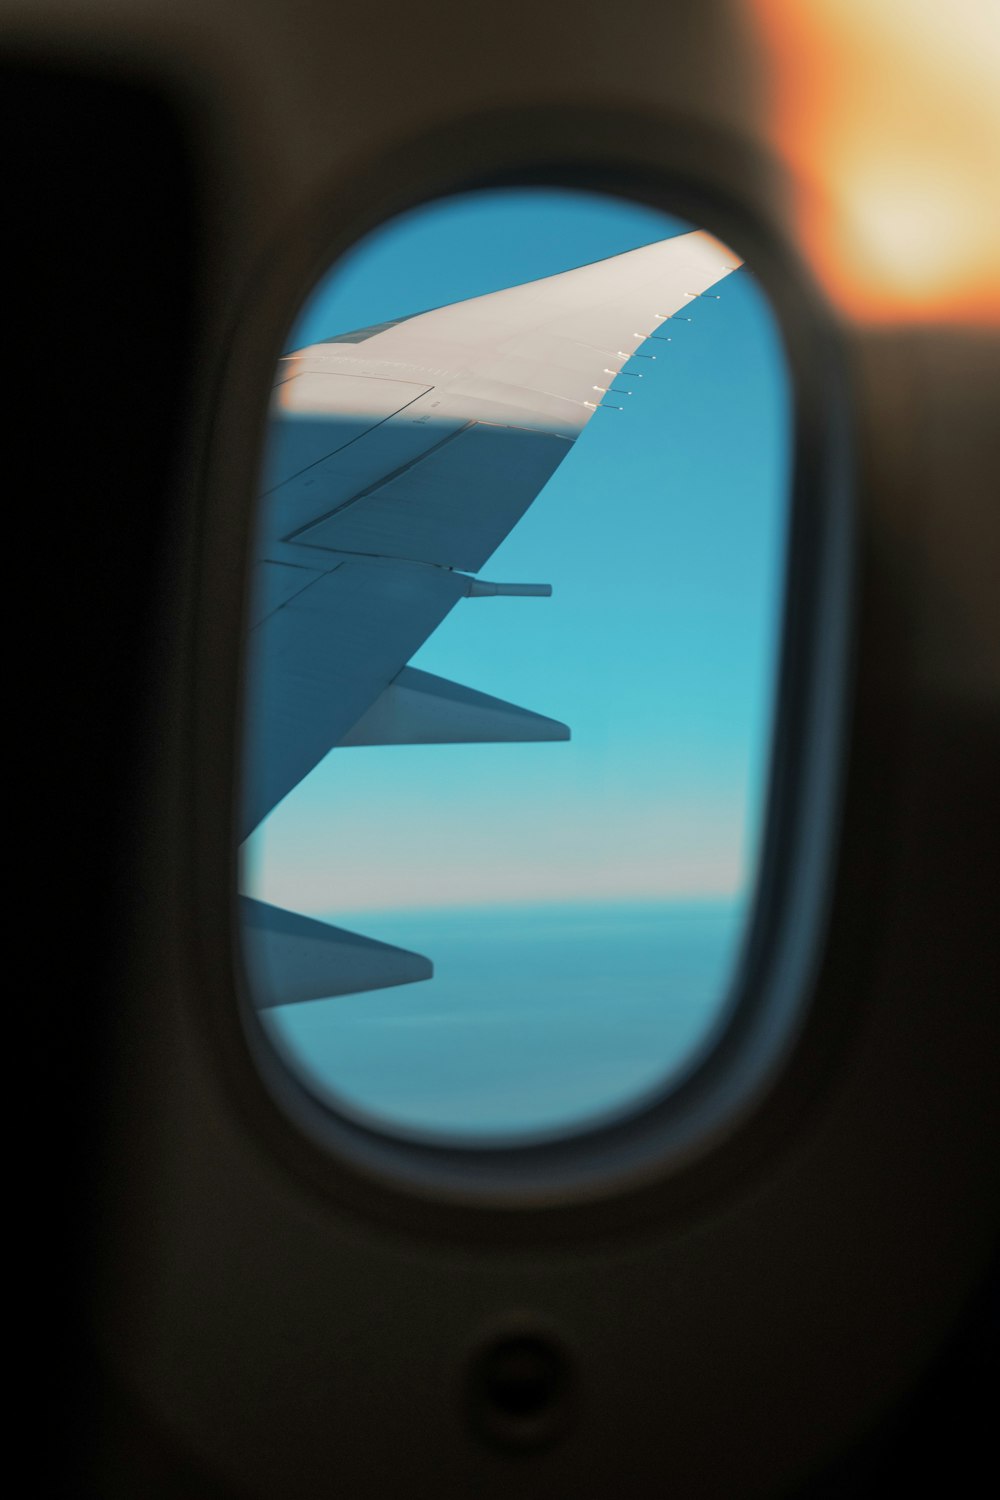 Fotografía de la ventana del avión de pasajeros del ala